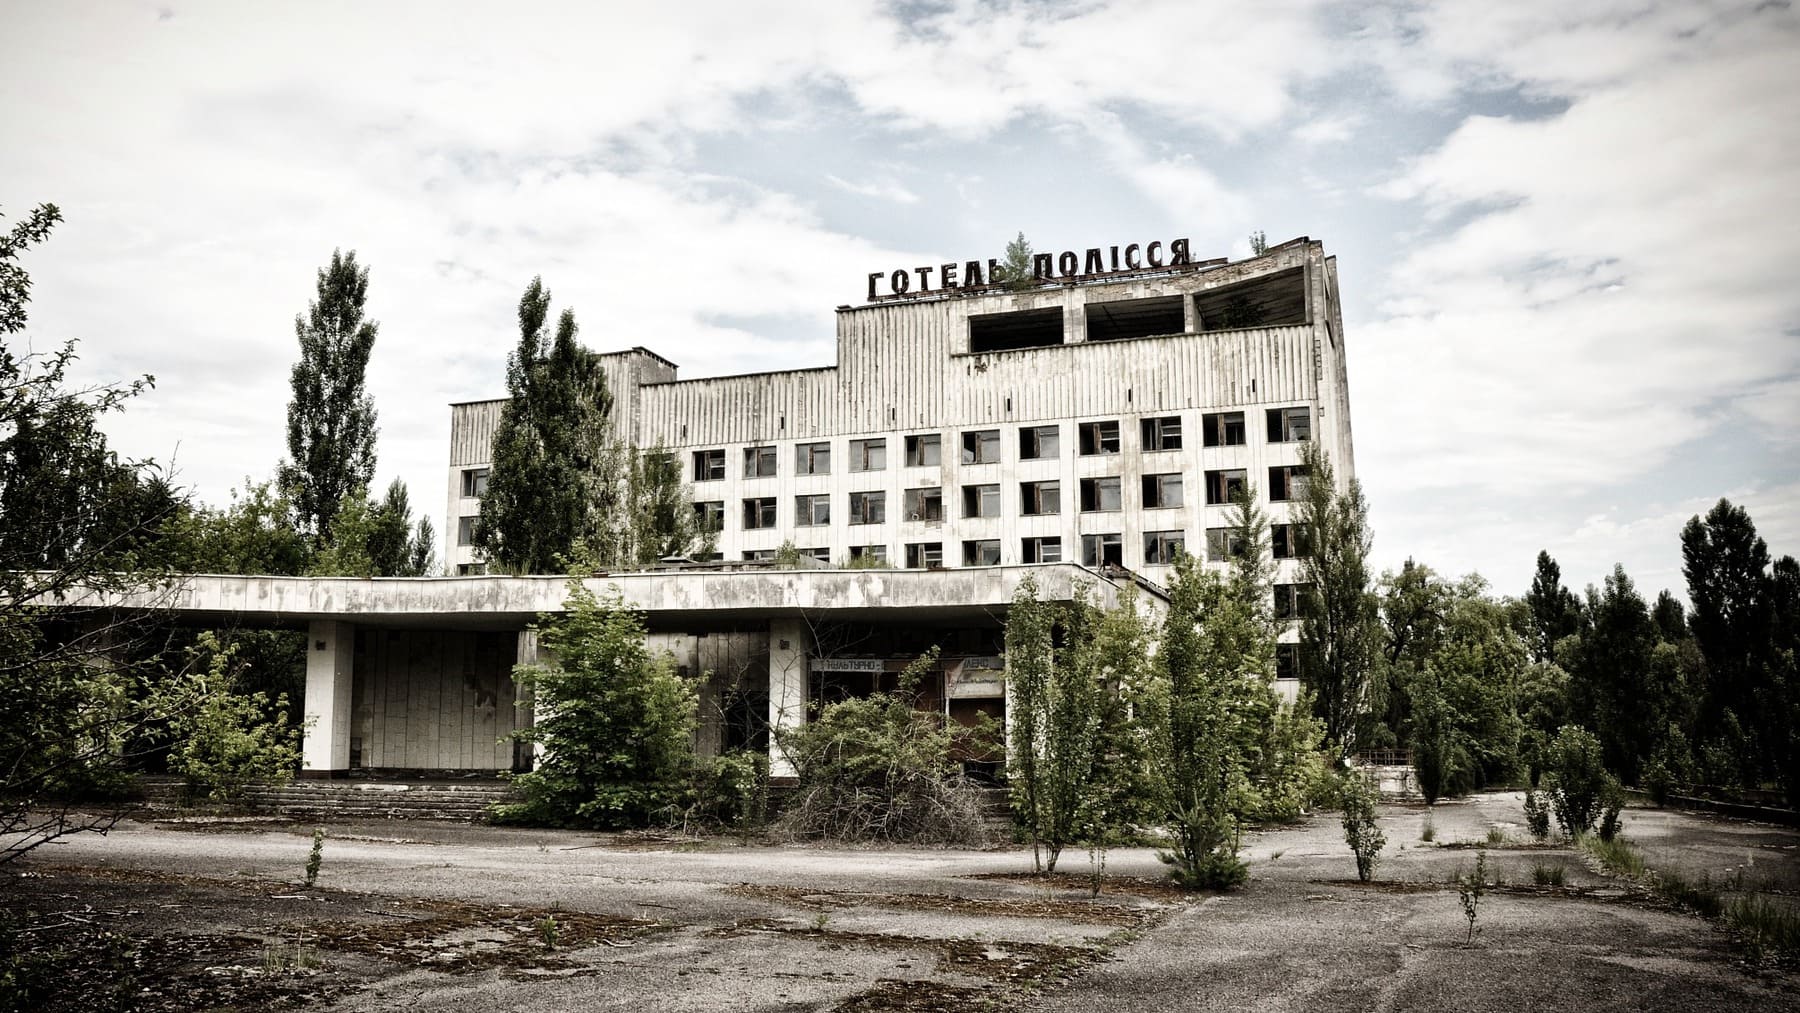 ¿Qué pasó en el accidente nuclear de Chernobyl? Daños humanos y medioambientales